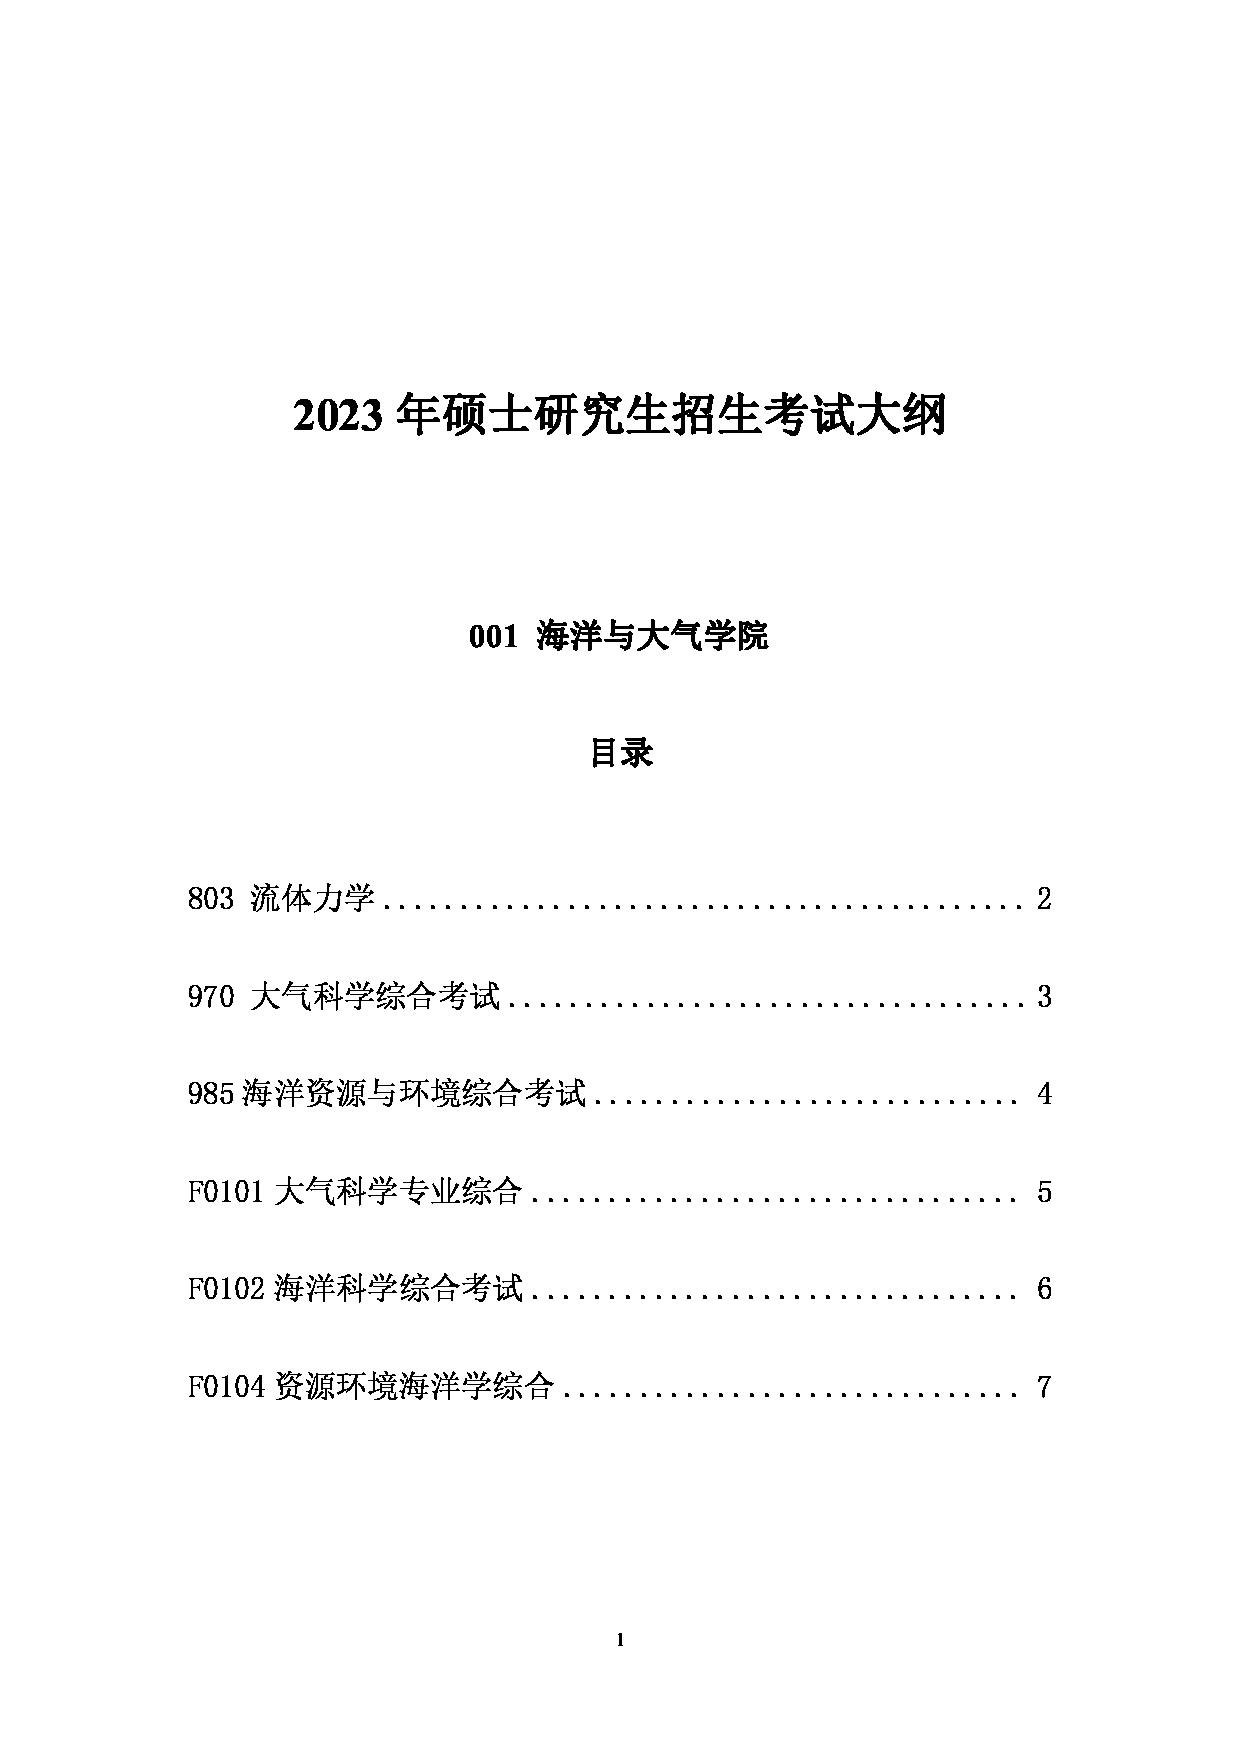 2023考研大纲：中国海洋大学2023年考研 001海洋与大气学院 考试大纲第1页